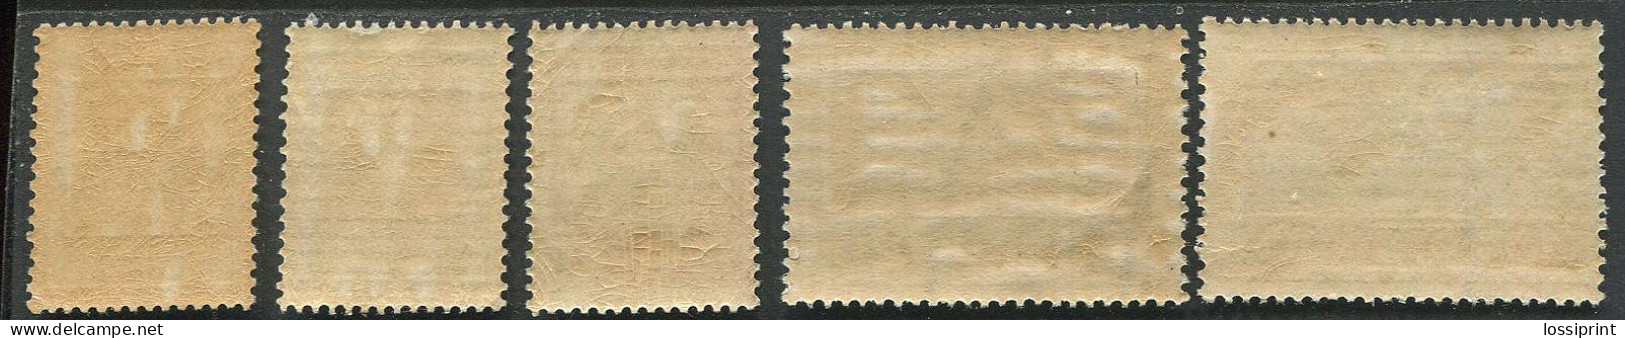 Estonia:Unused Stamps Serie Castles, Tallinn, Narva, Kuressaare, Tartu, Clue Horizontal Lines, 1927, MNH - Estland